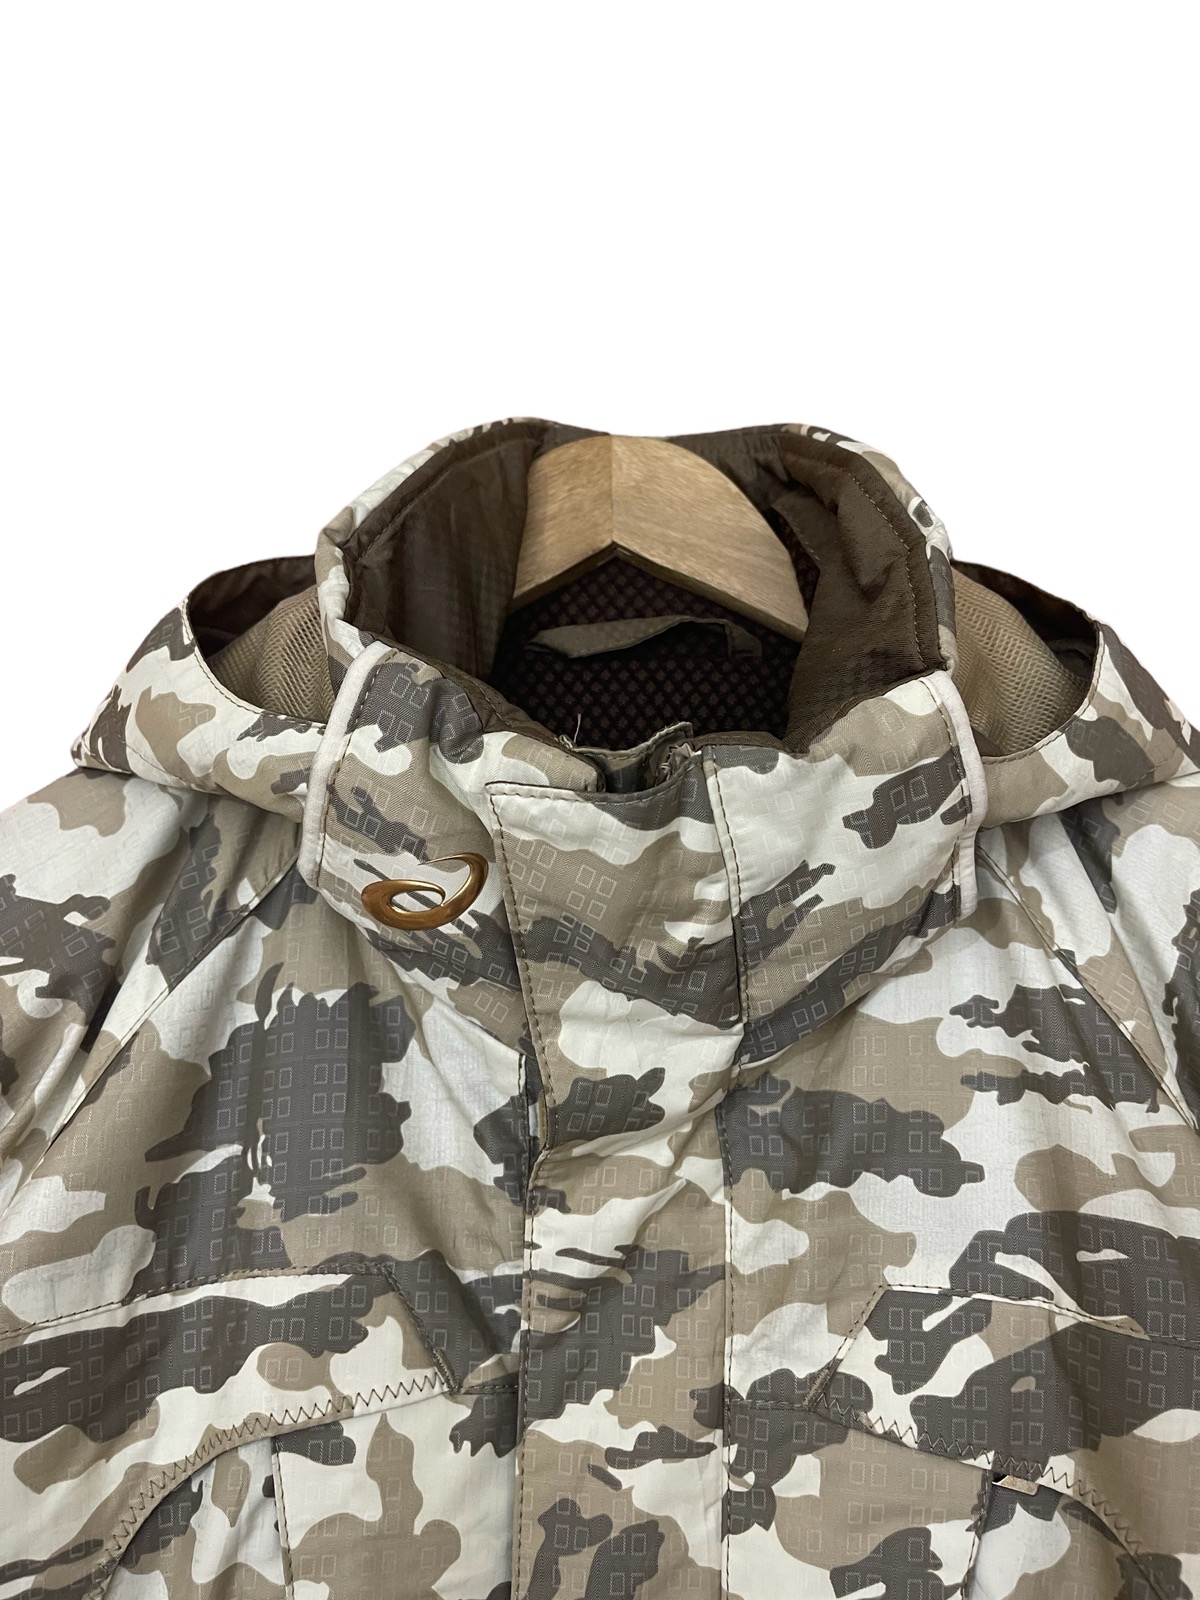 Asics jacket cold weather jacket - 8